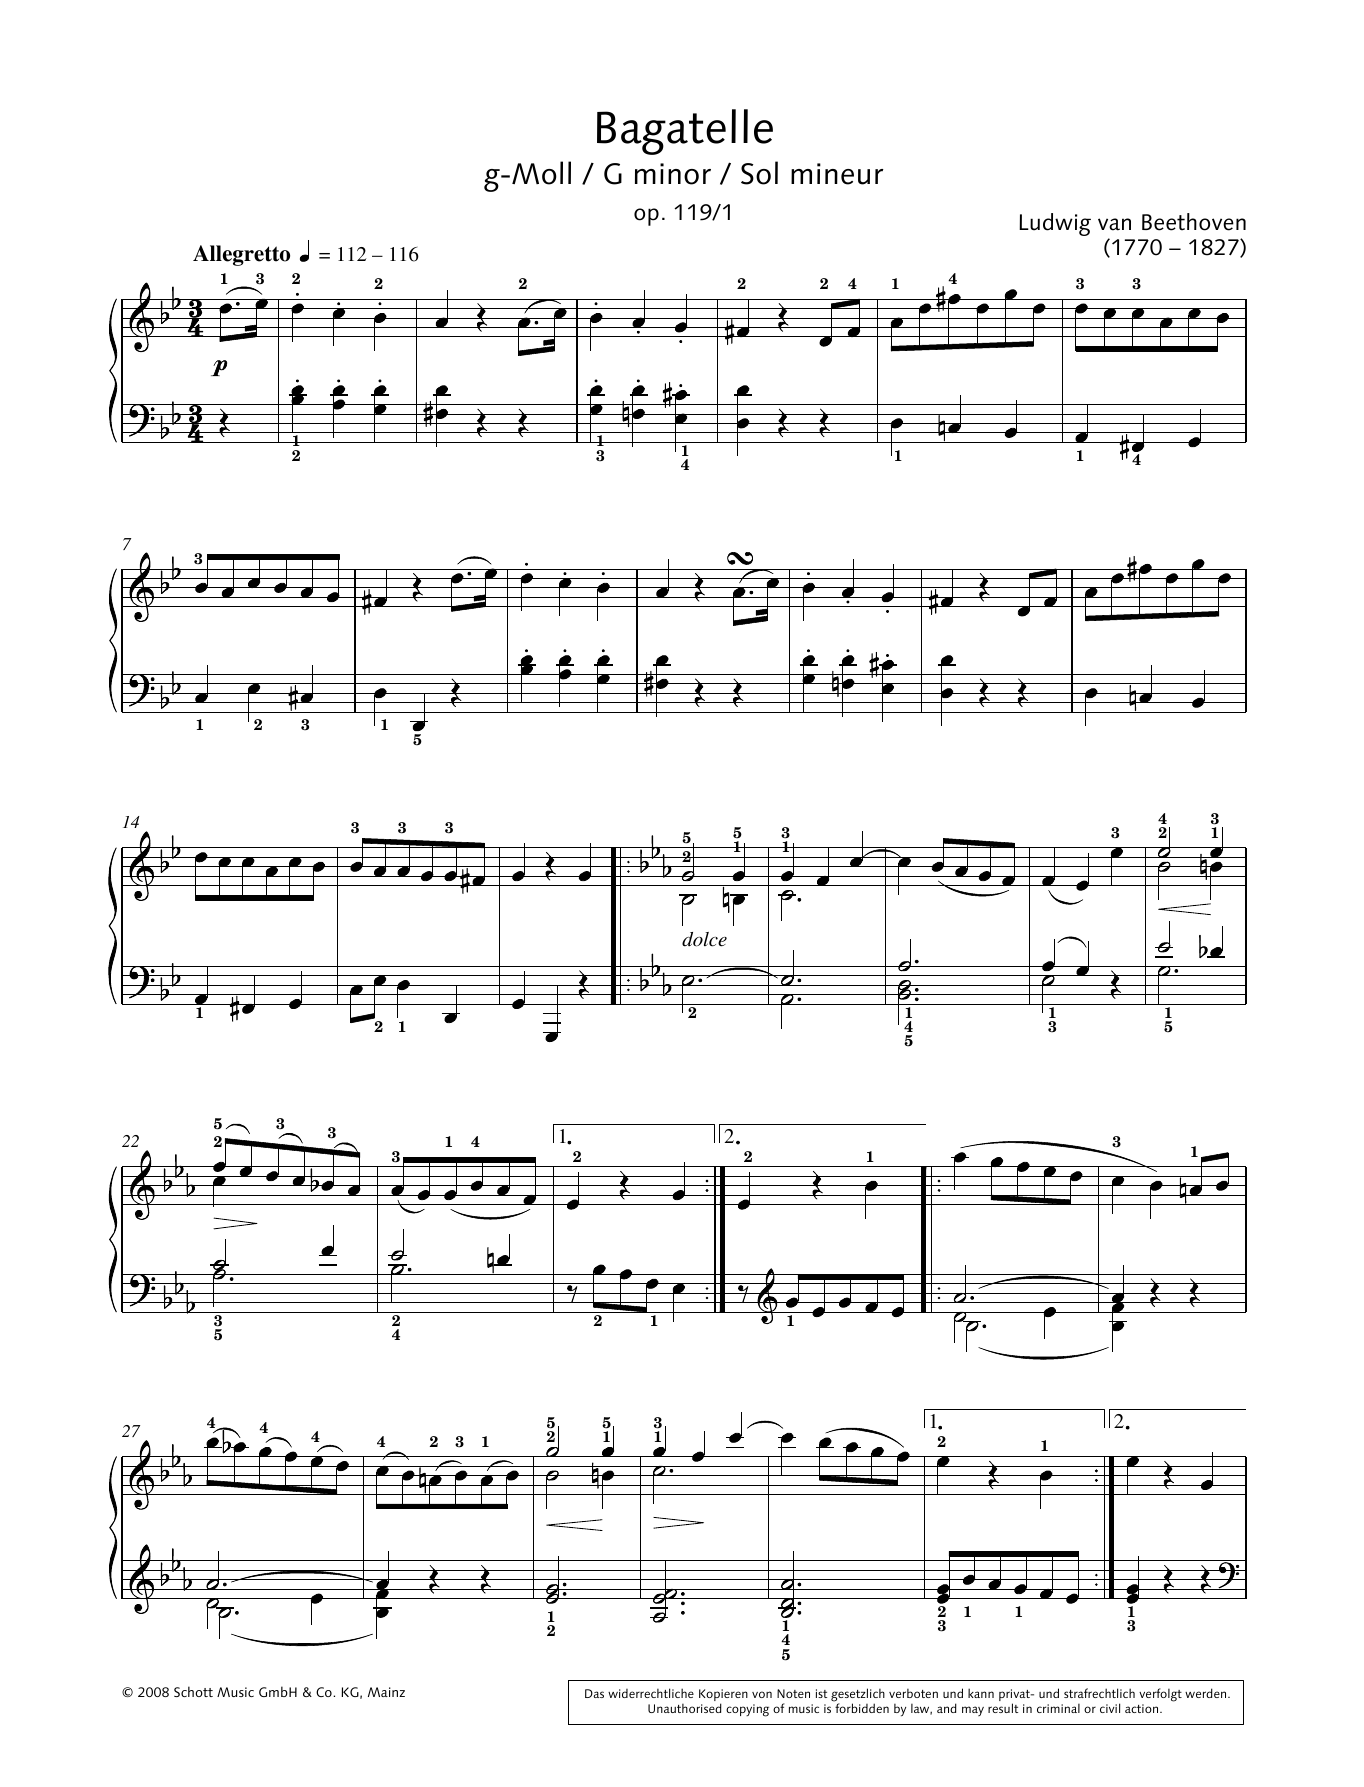 Download Ludwig van Beethoven Bagatelle in G minor Sheet Music